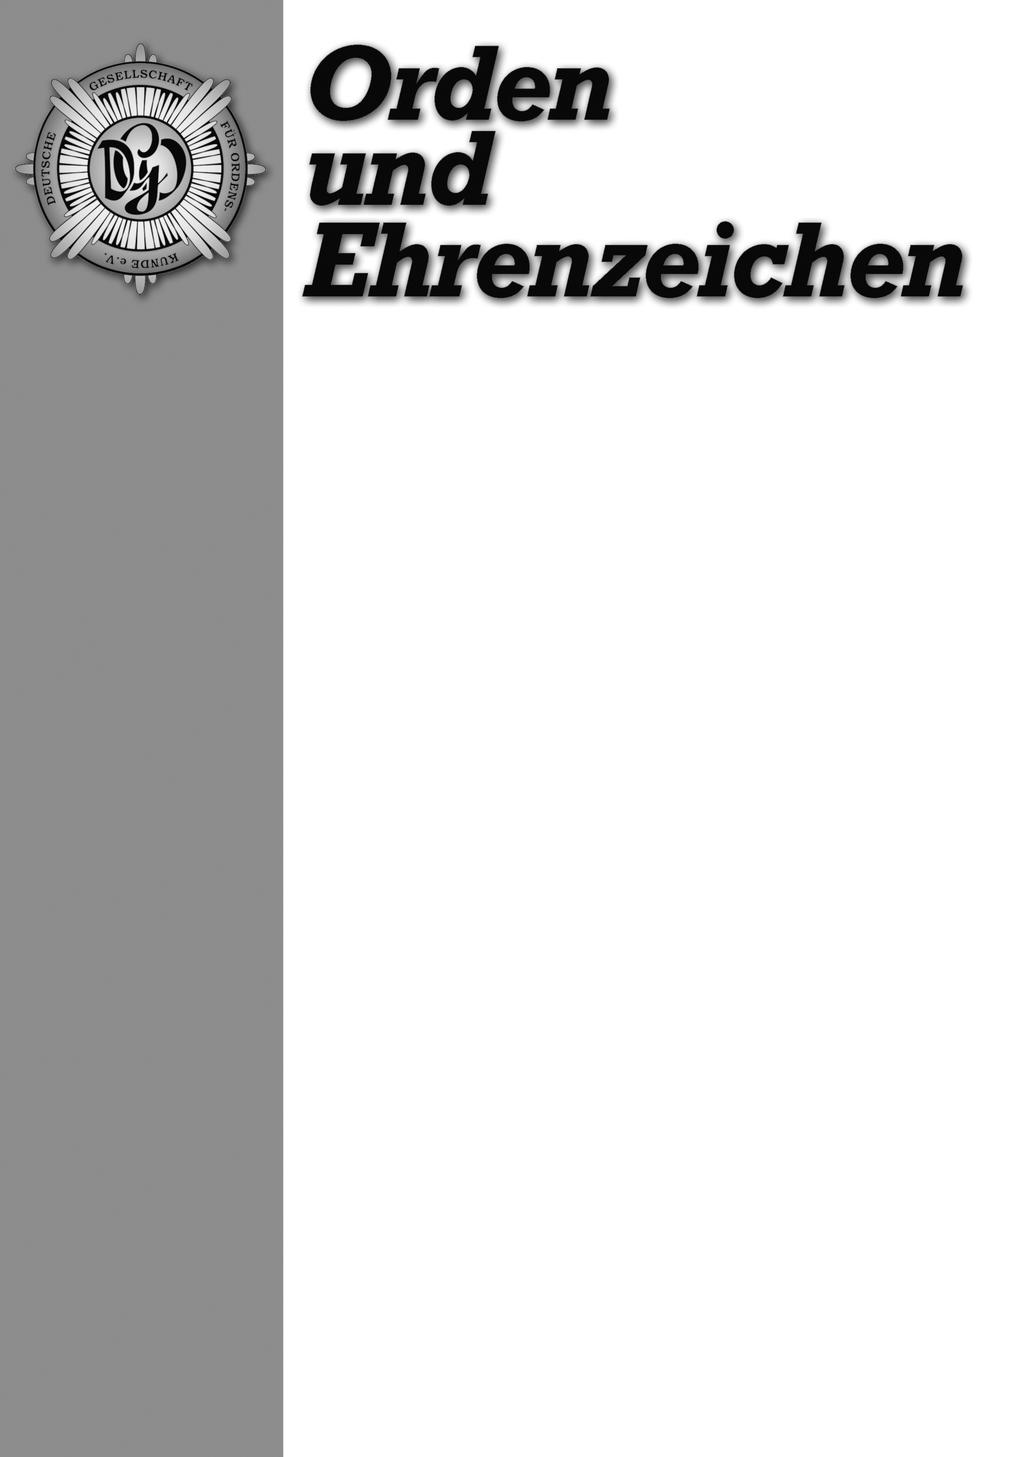 Das Magazin für Freunde der Phaleristik Jahresinhaltsverzeichnis 2017 (Heft 107 112) (zusammengestellt von Jürgen Lindner, Gäufelden) Teil A Ordenskunde.